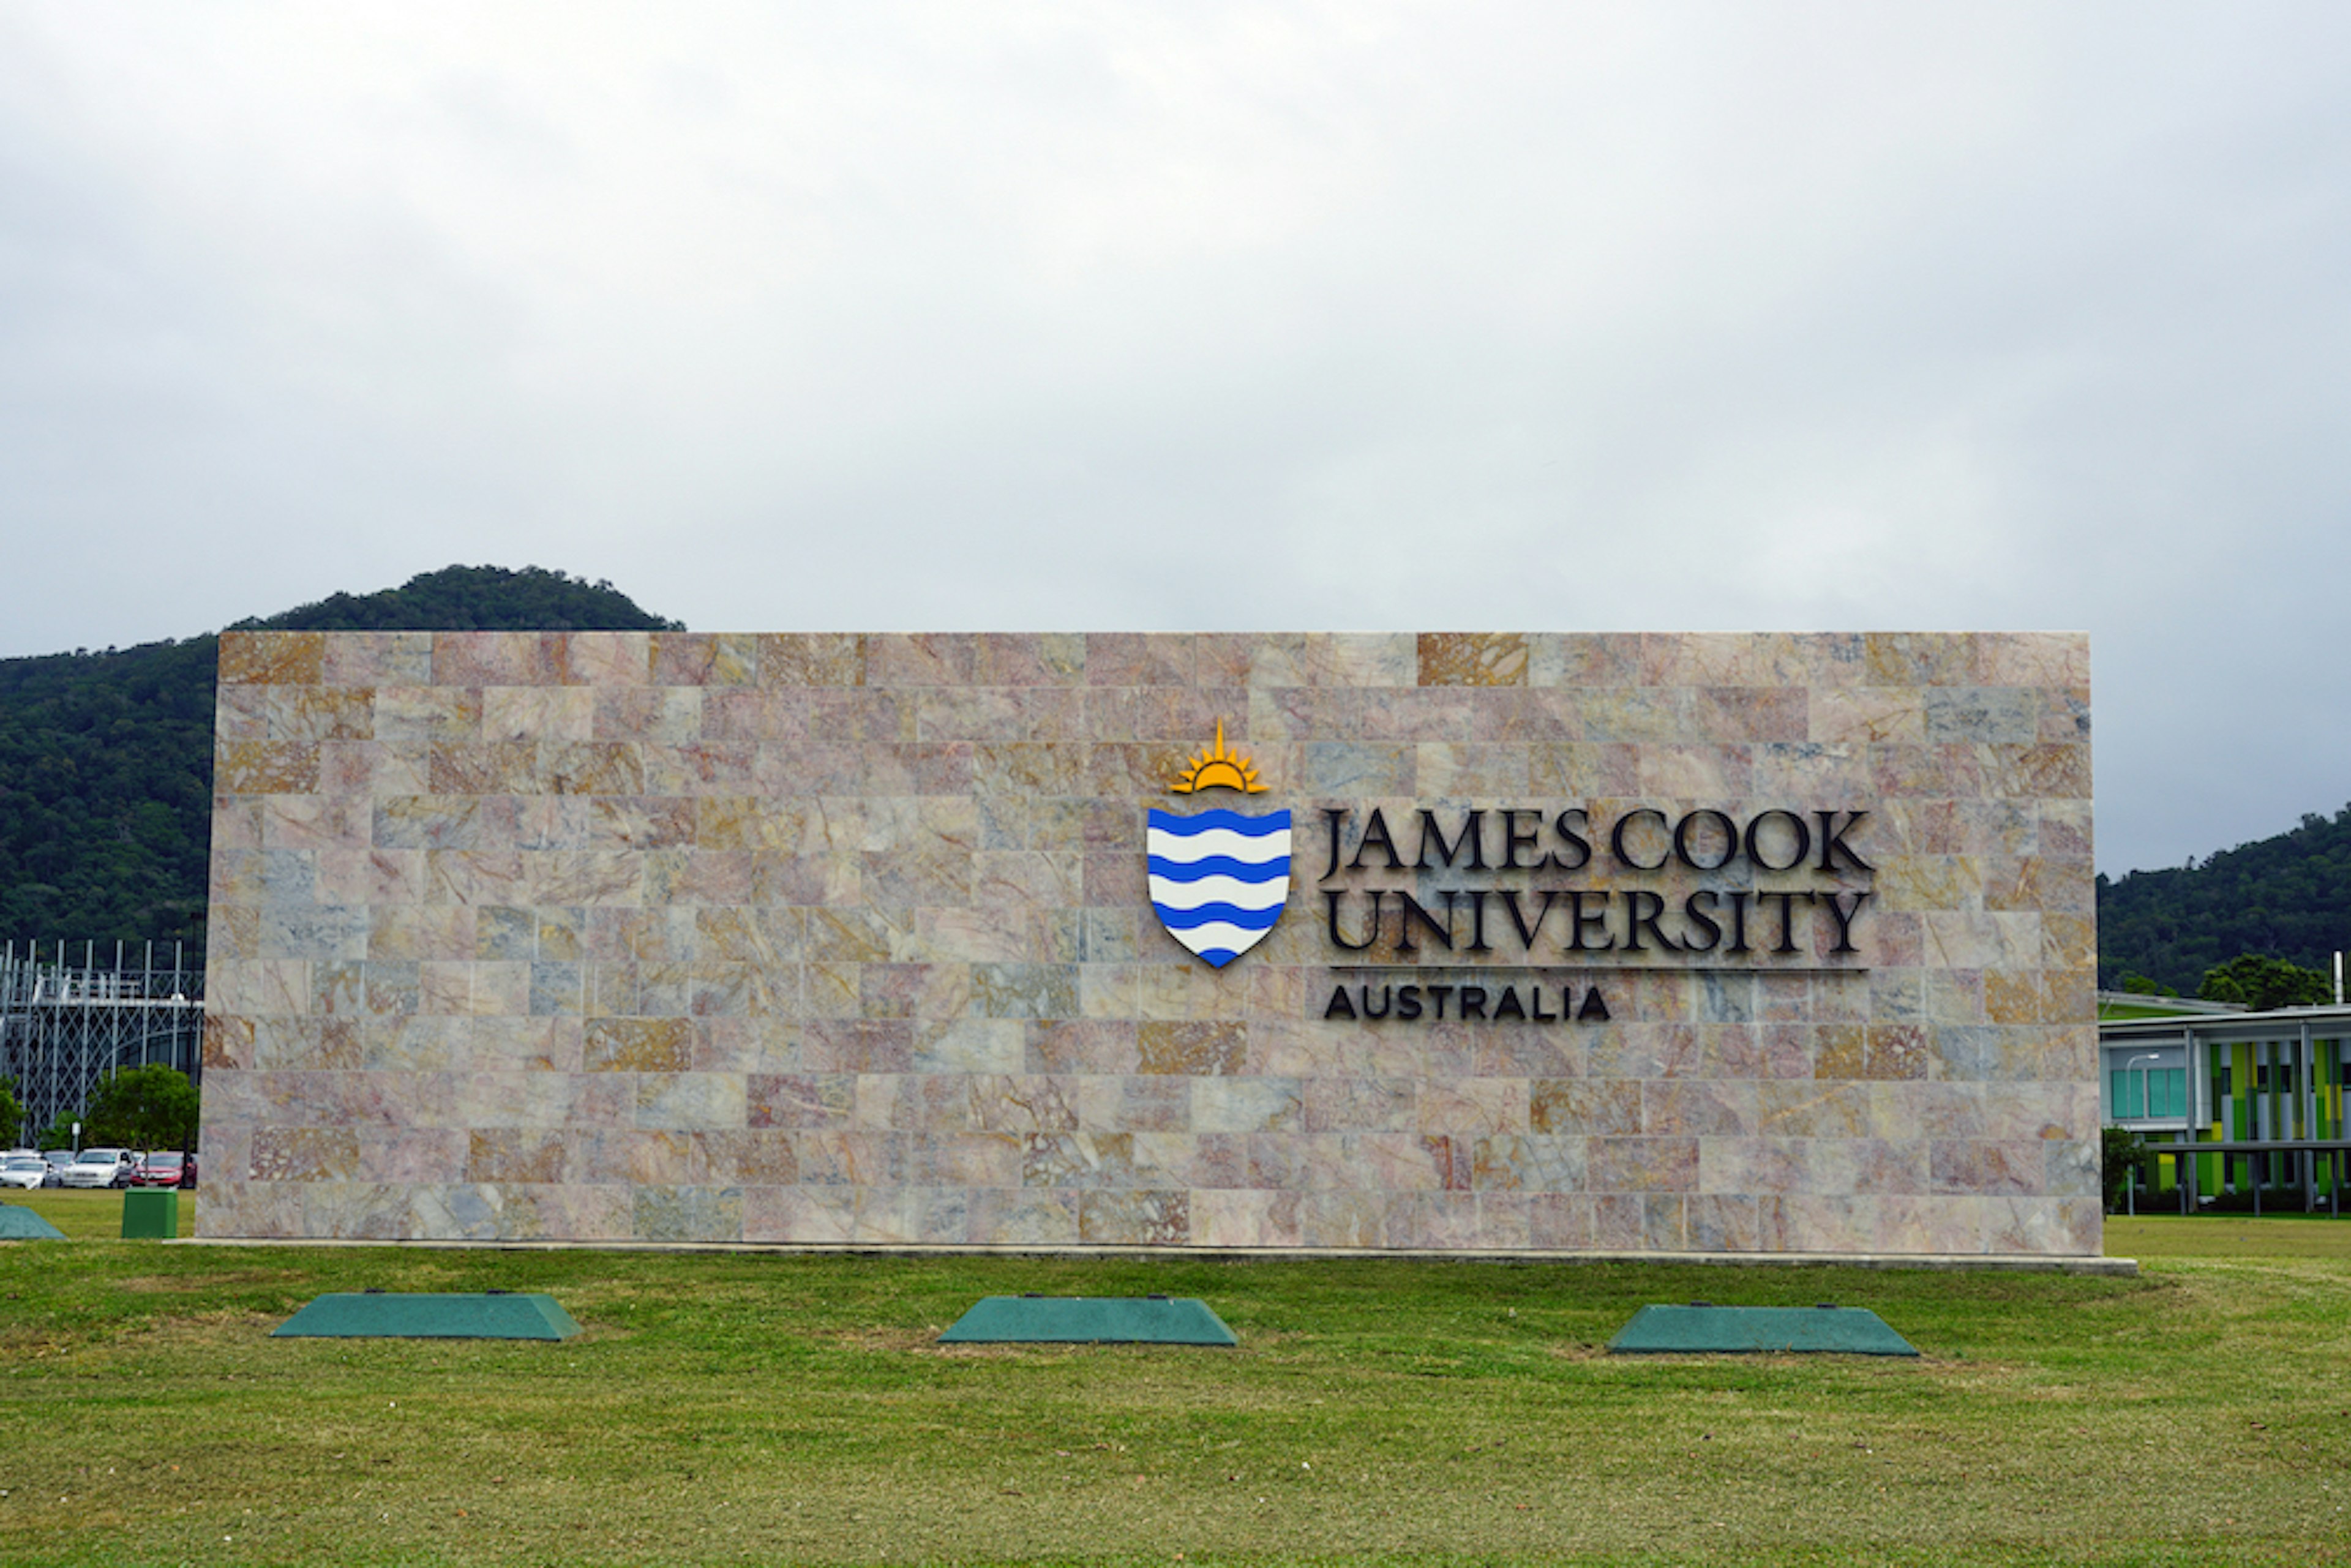 James Cook University Australia